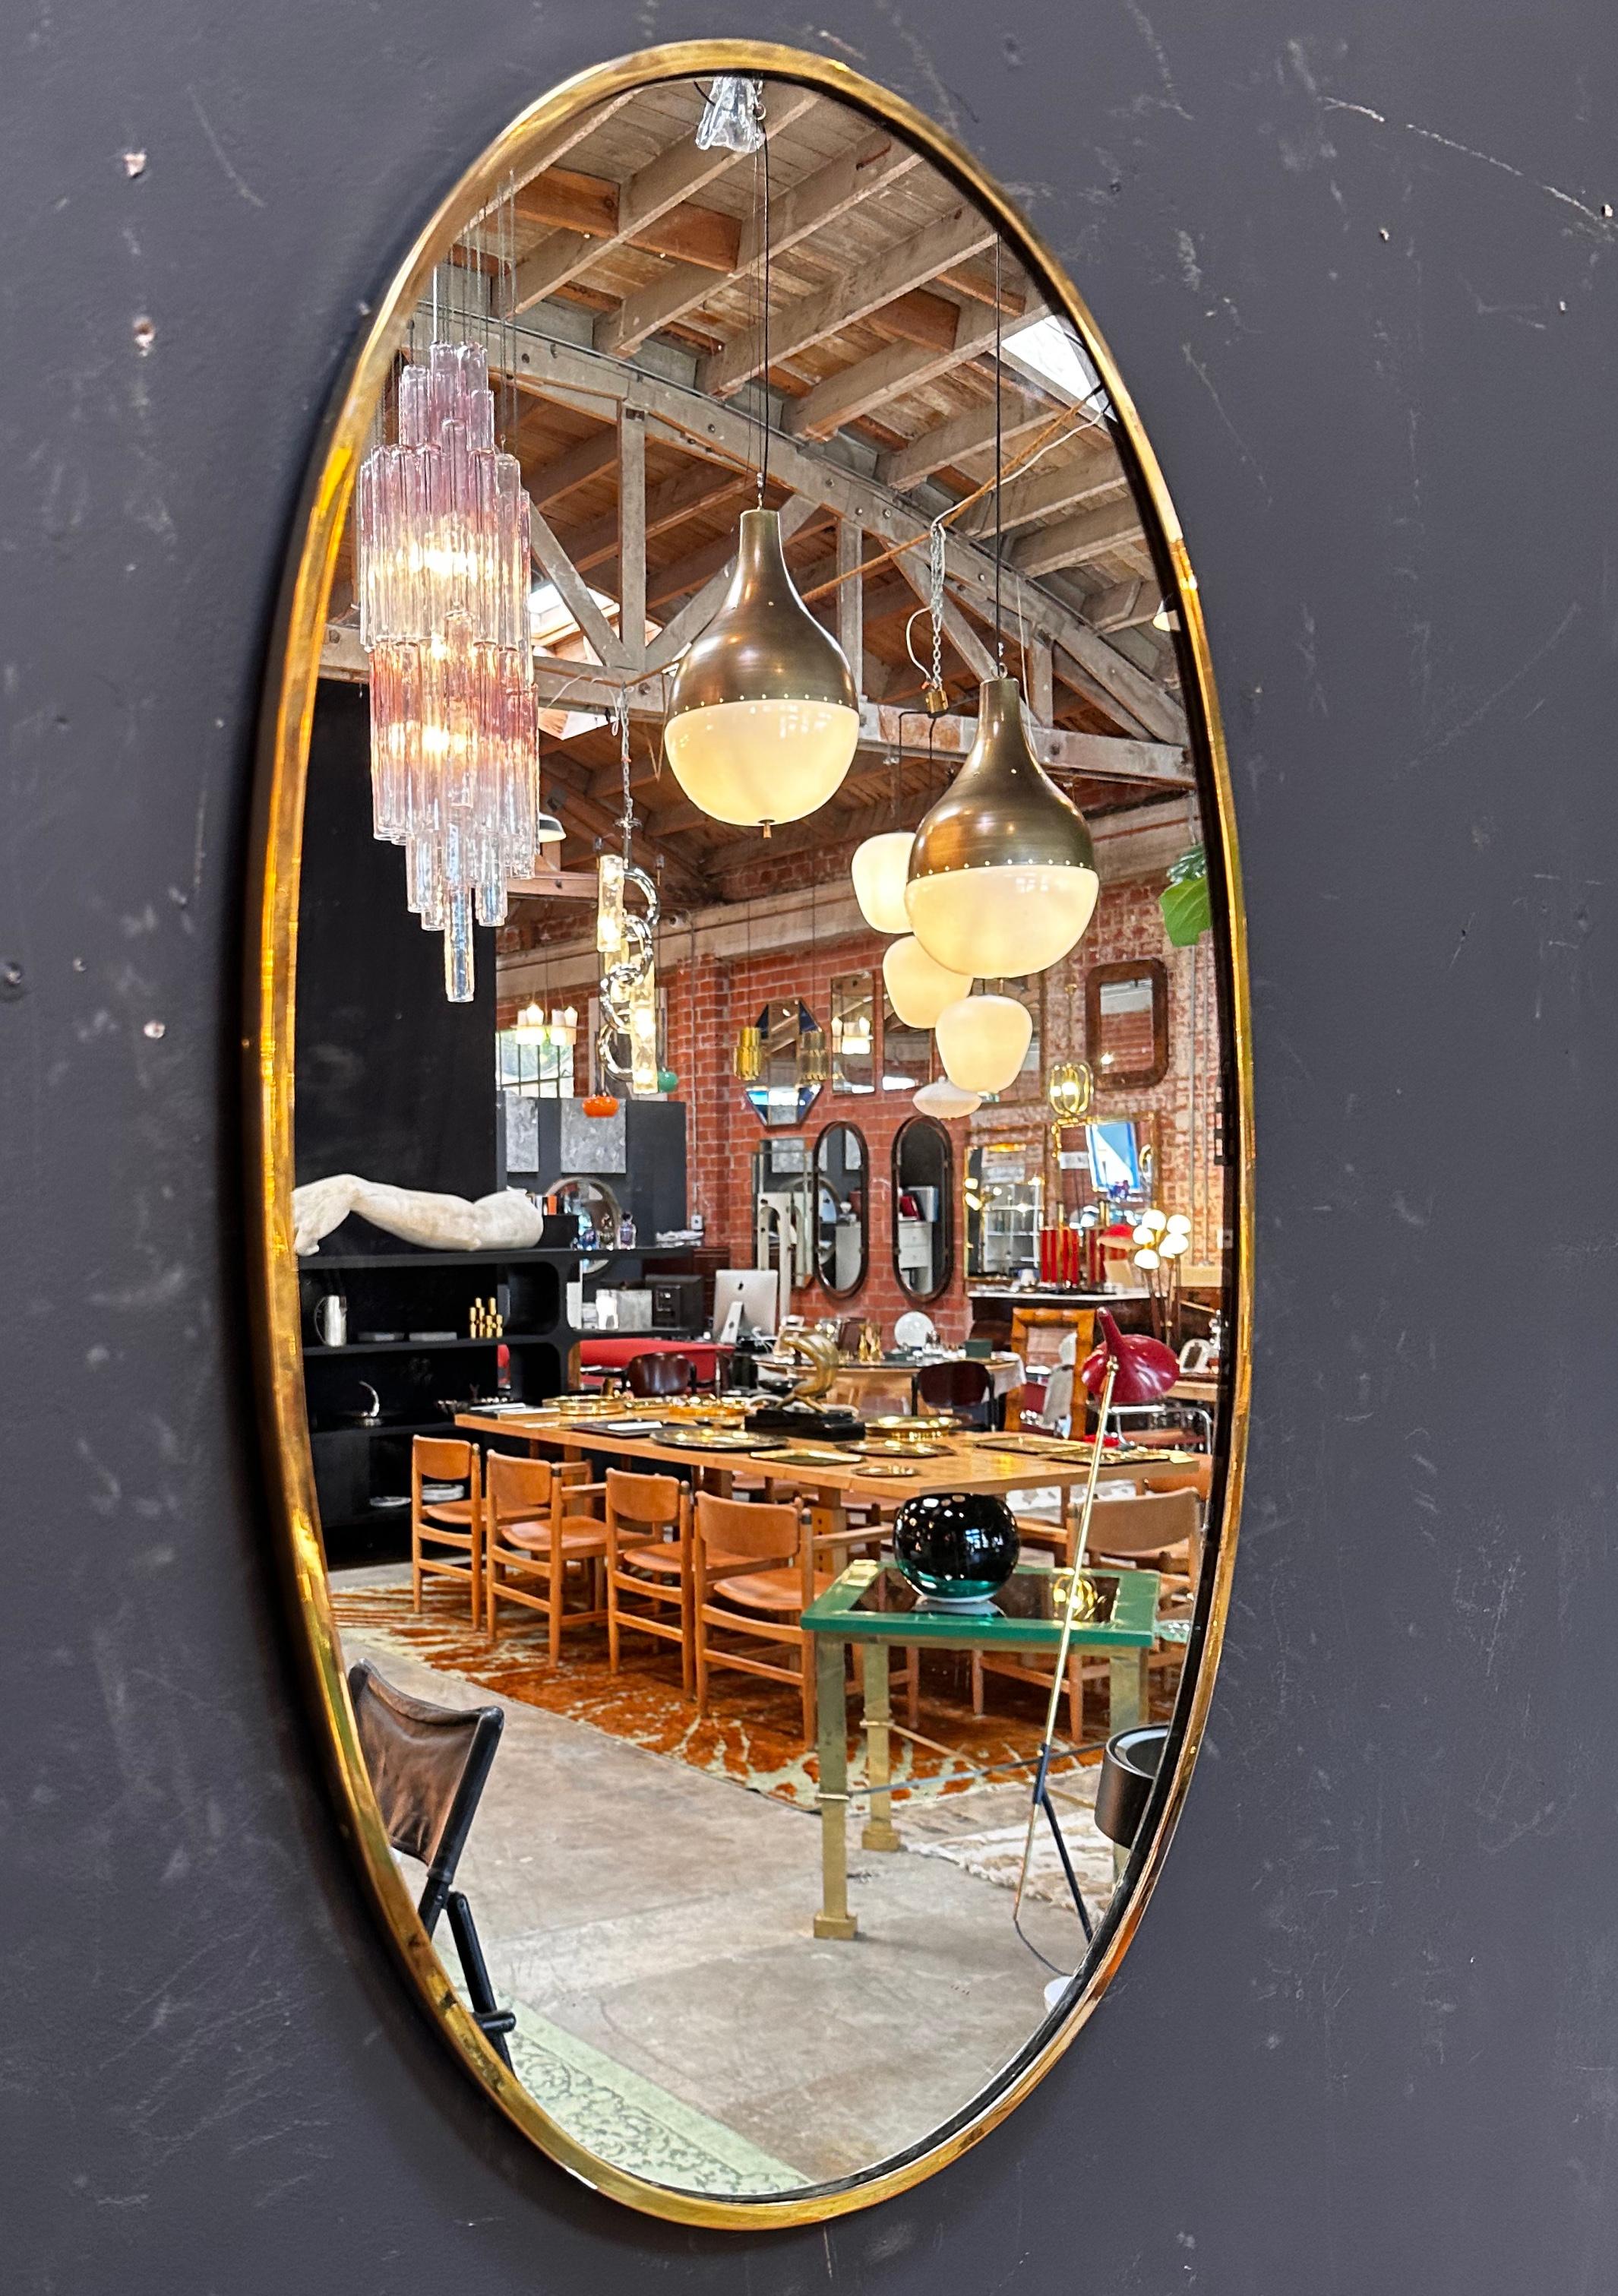 Der Vintage Italian 1980 Oval Brass Wall Mirror ist ein klassisches und elegantes Stück mit einer zeitlosen ovalen Form und einem schönen Messingrahmen.

